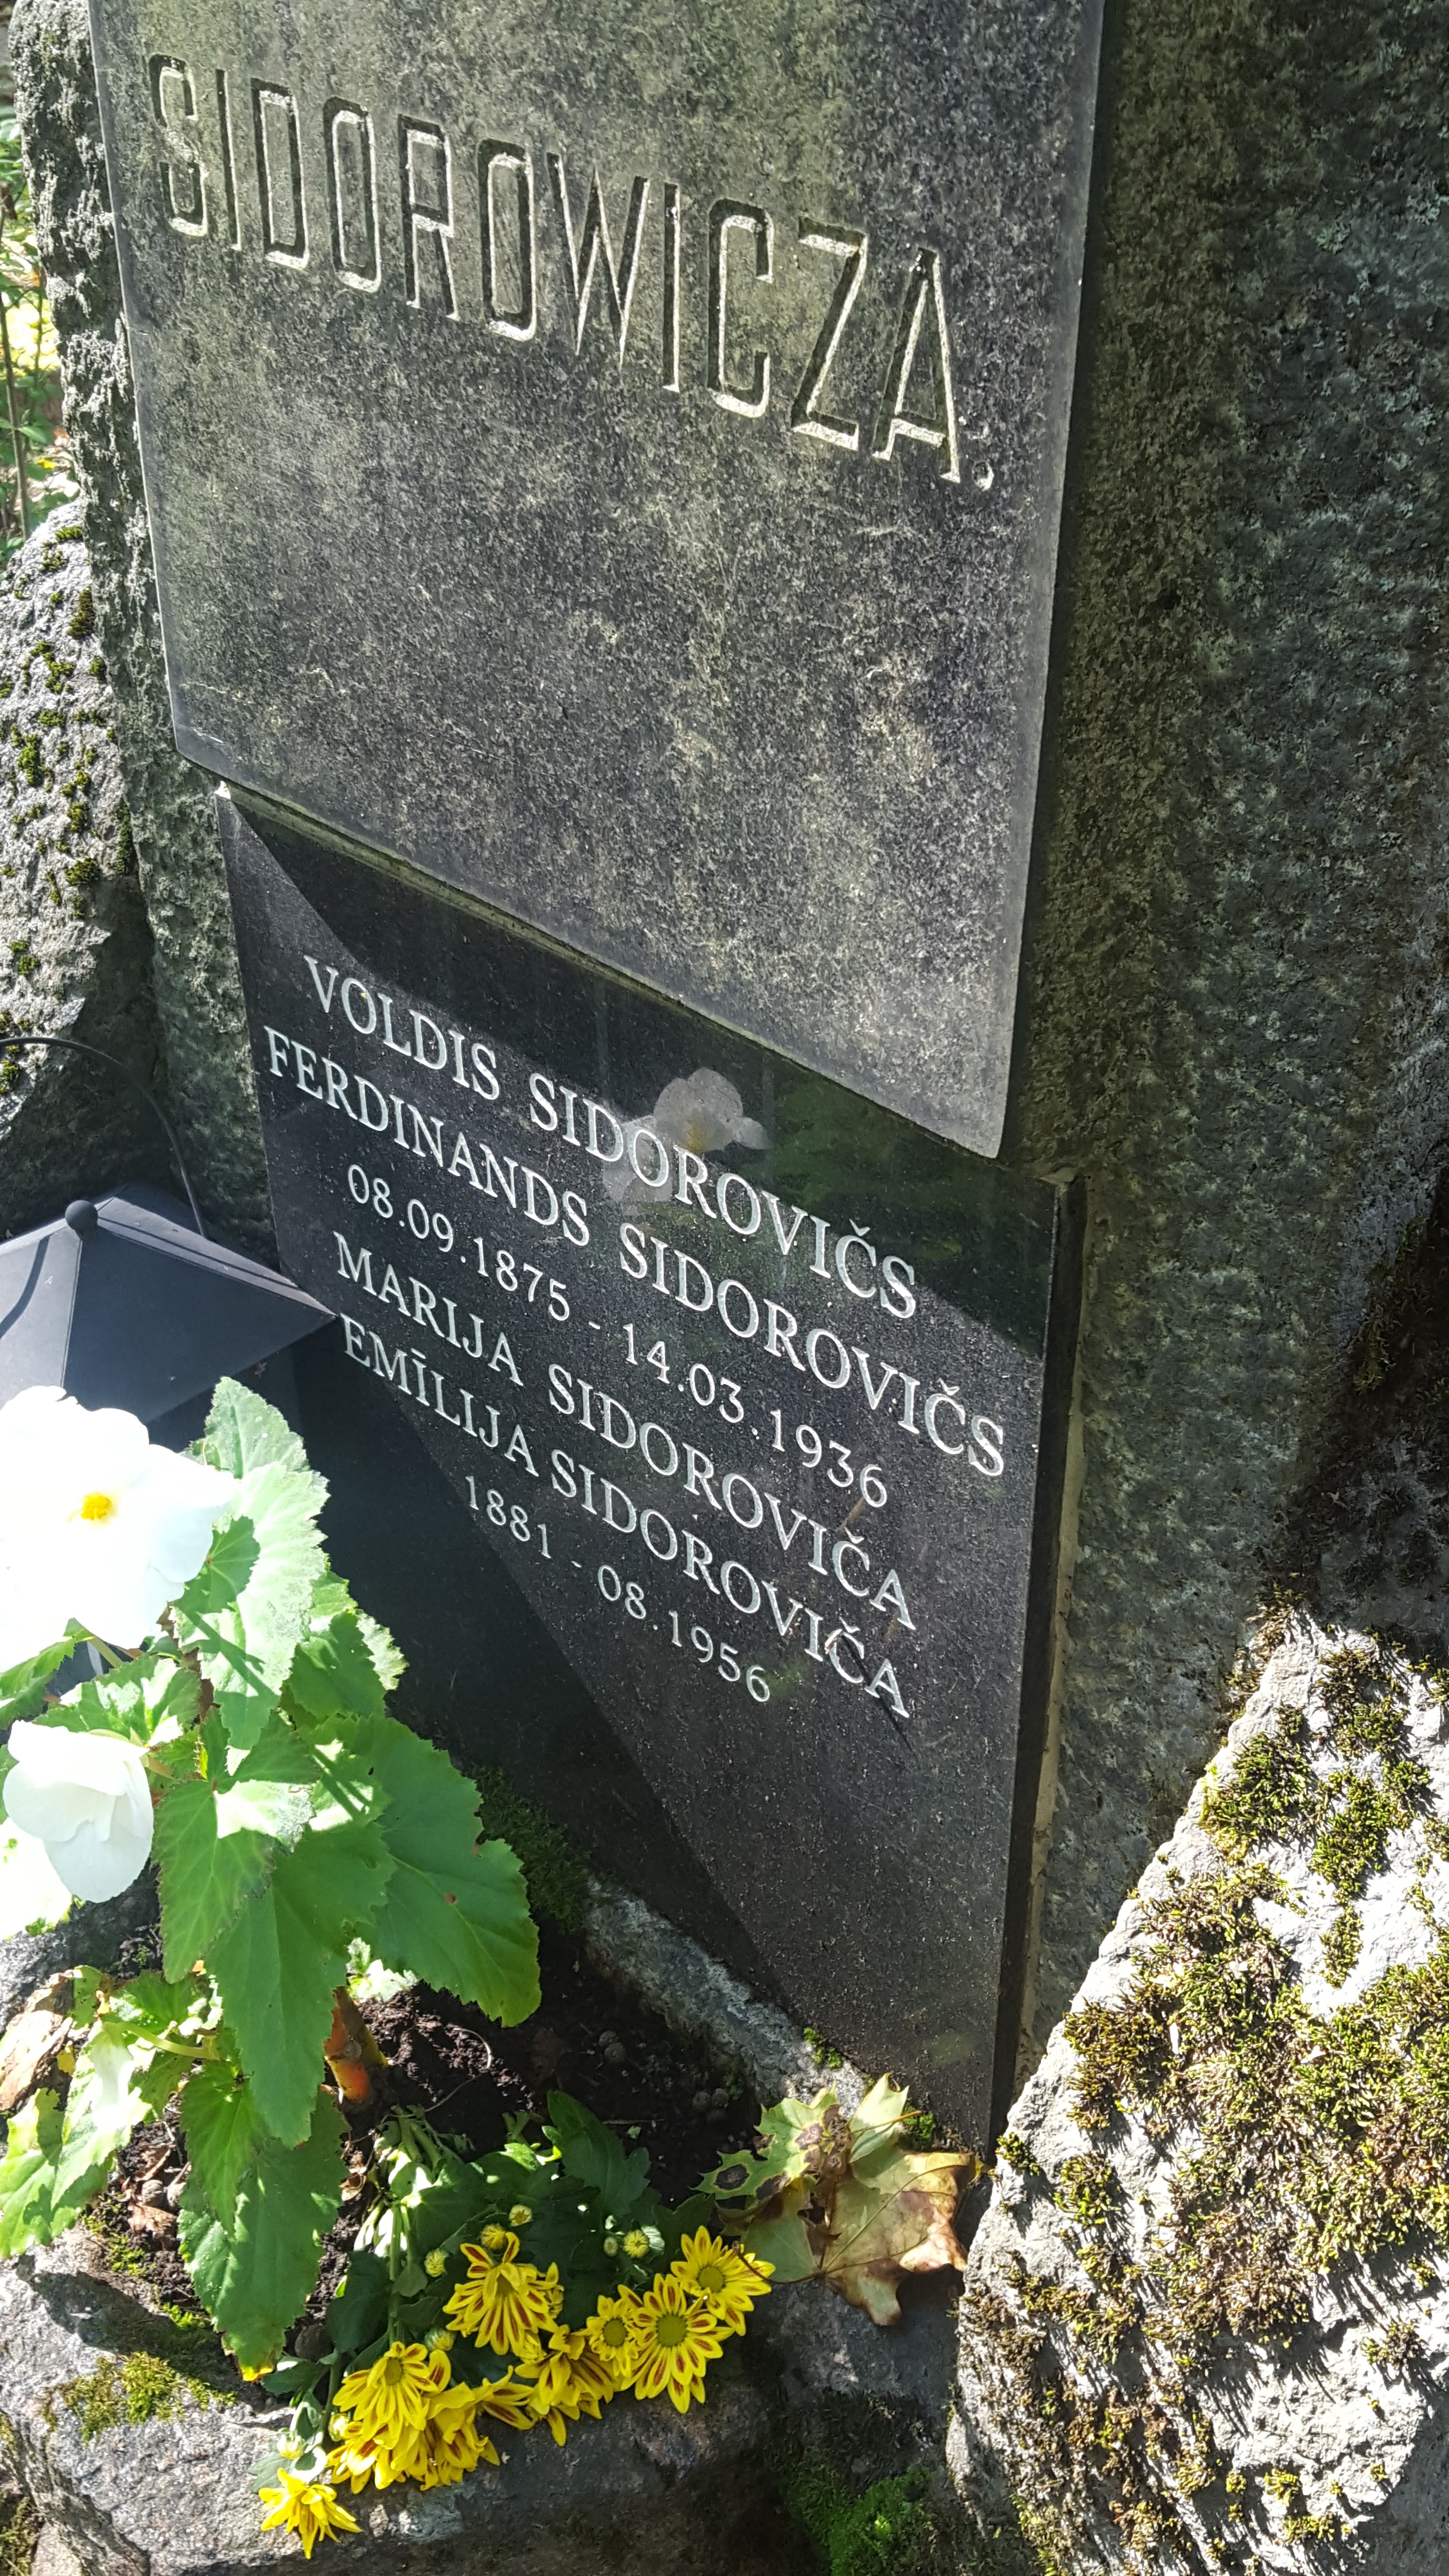 Napis z nagrobka rodziny Sidorowiczów, cmentarz św. Michała w Rydze, stan z 2021 r.